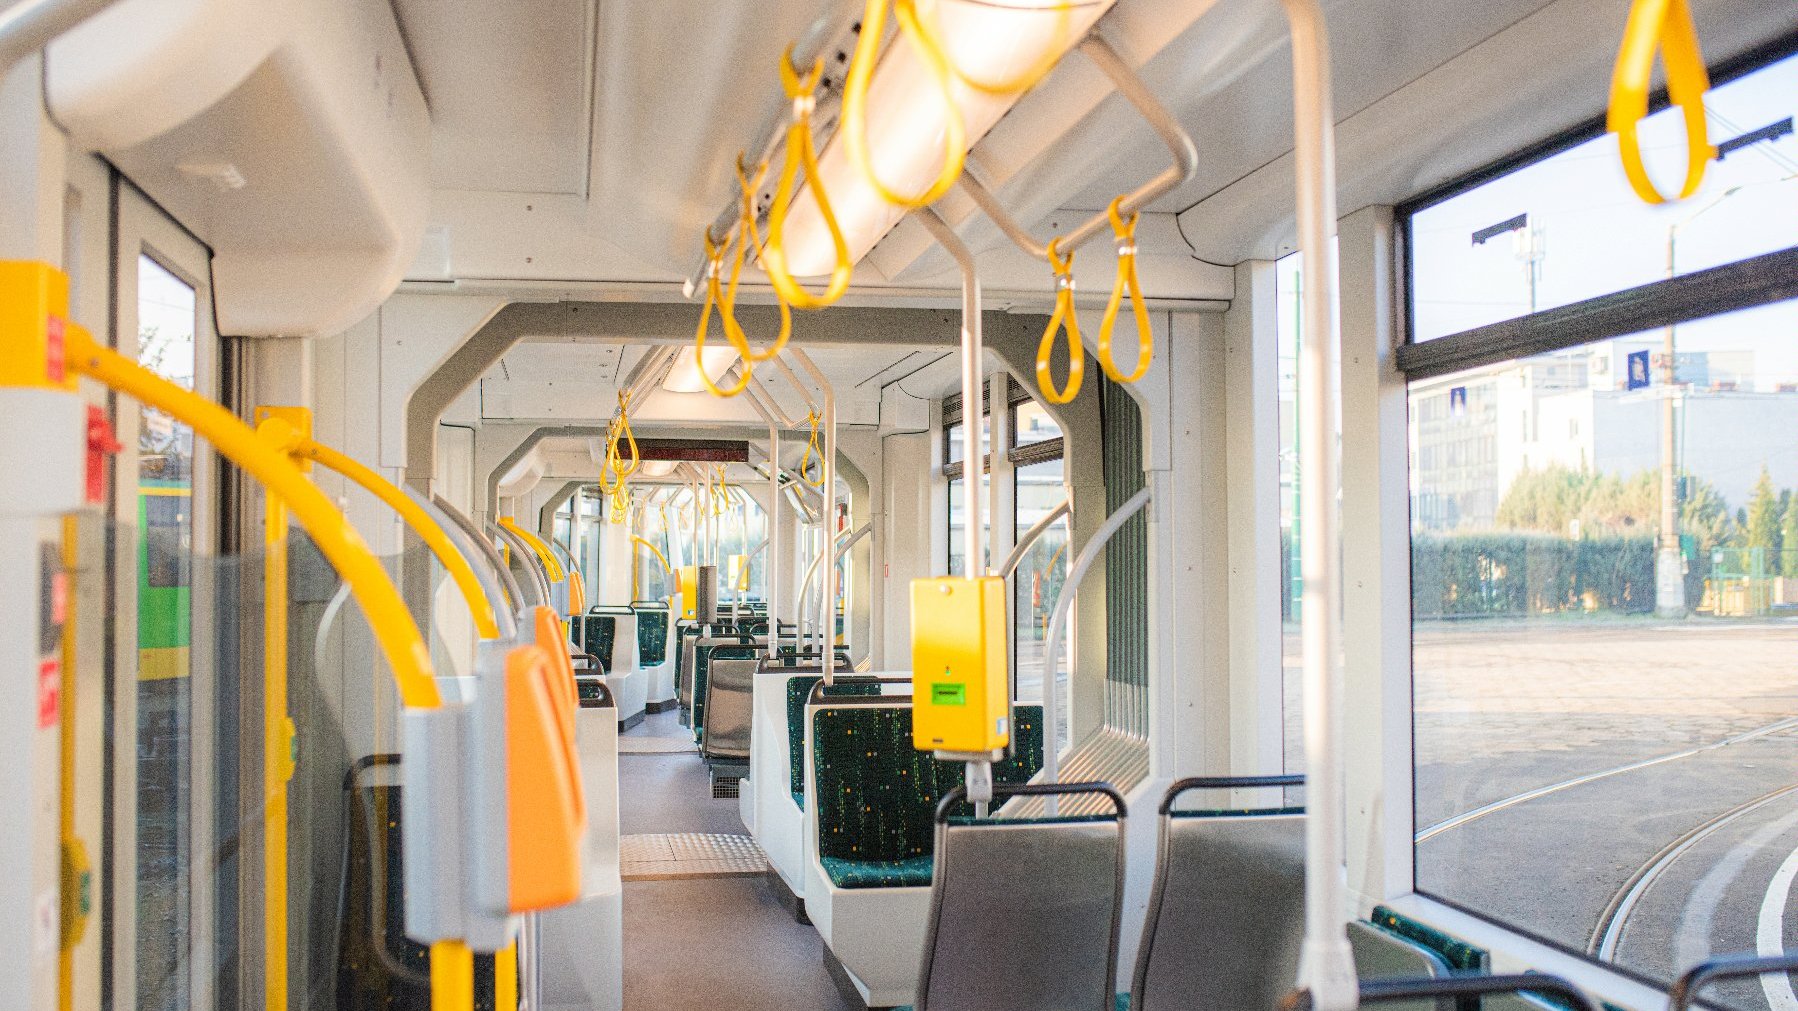 Galeria zdjęć odnowionego tramwaju Solaris Combino